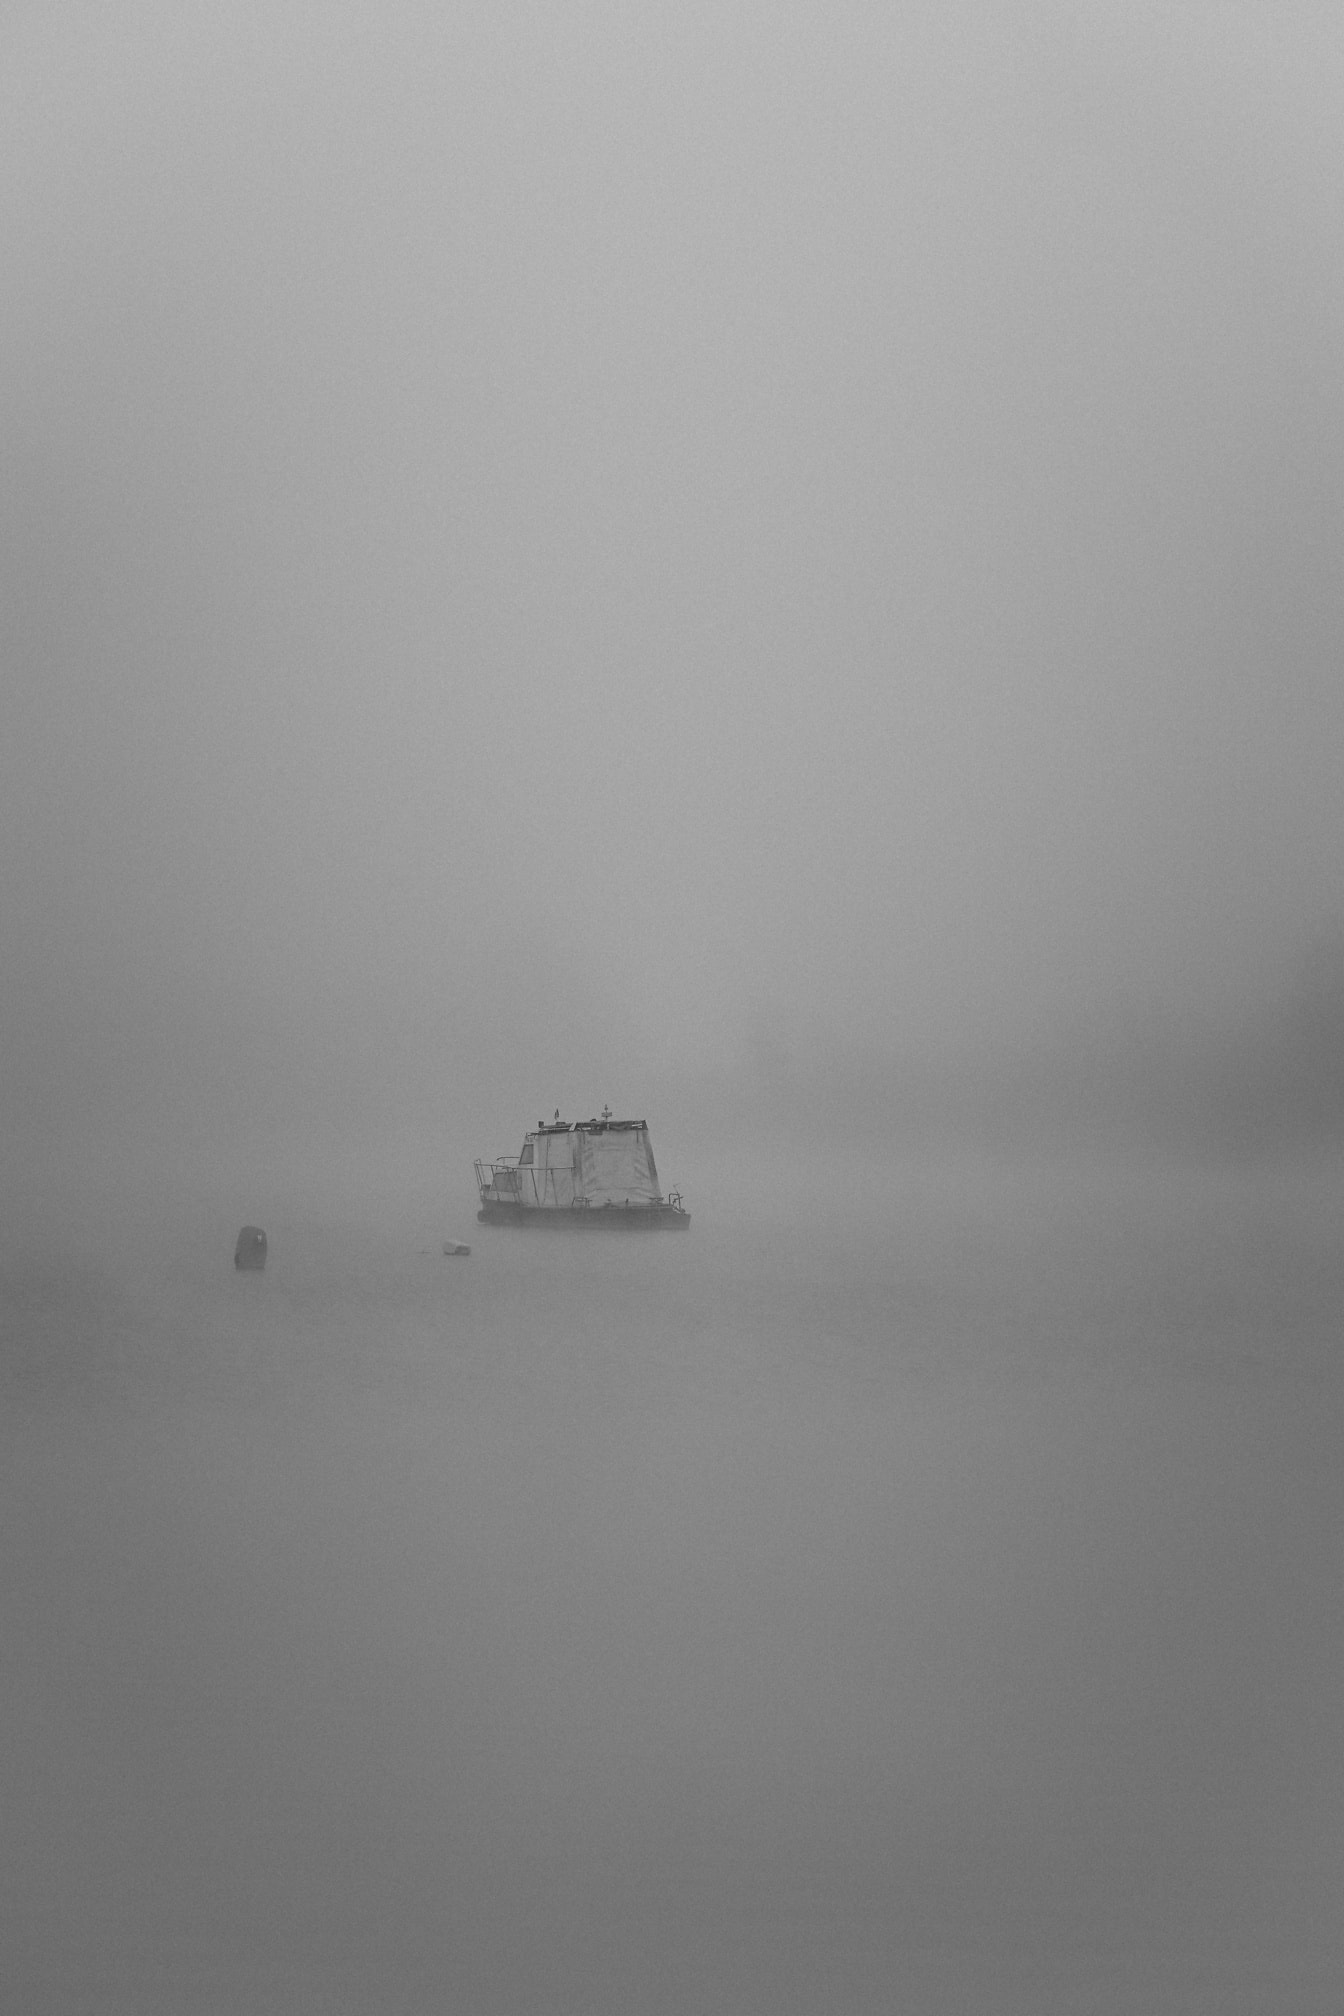 Foto in bianco e nero della barca da pesca in lontananza sul fiume nella nebbia densa